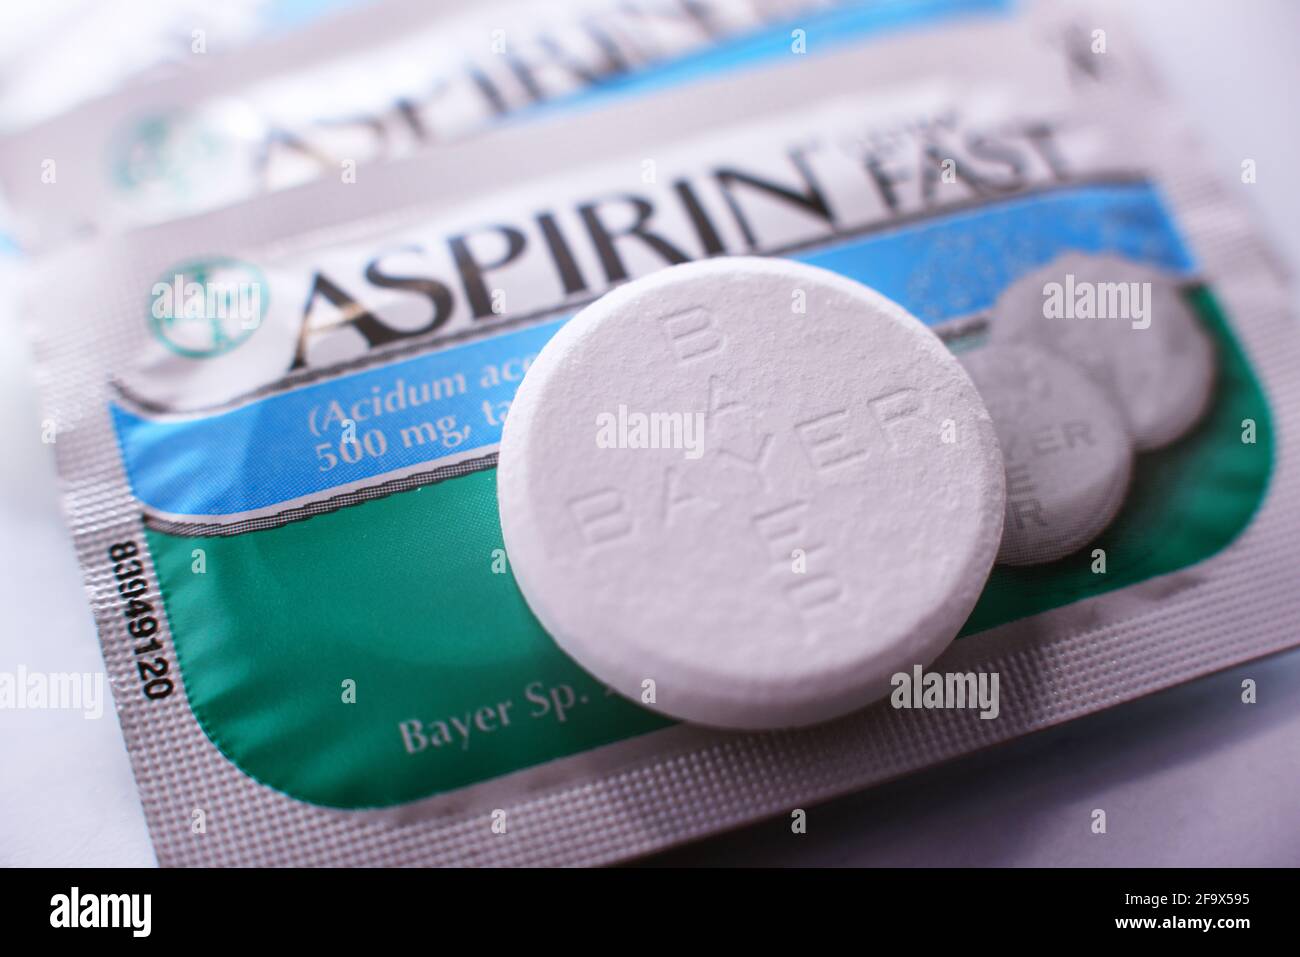 POZNAN, POL - 17 FEBBRAIO 2021: Pillole di aspirina, una marca di farmaci popolari, il primo e più noto prodotto di Bayer, multinazionale farmaceutica tedesca Foto Stock